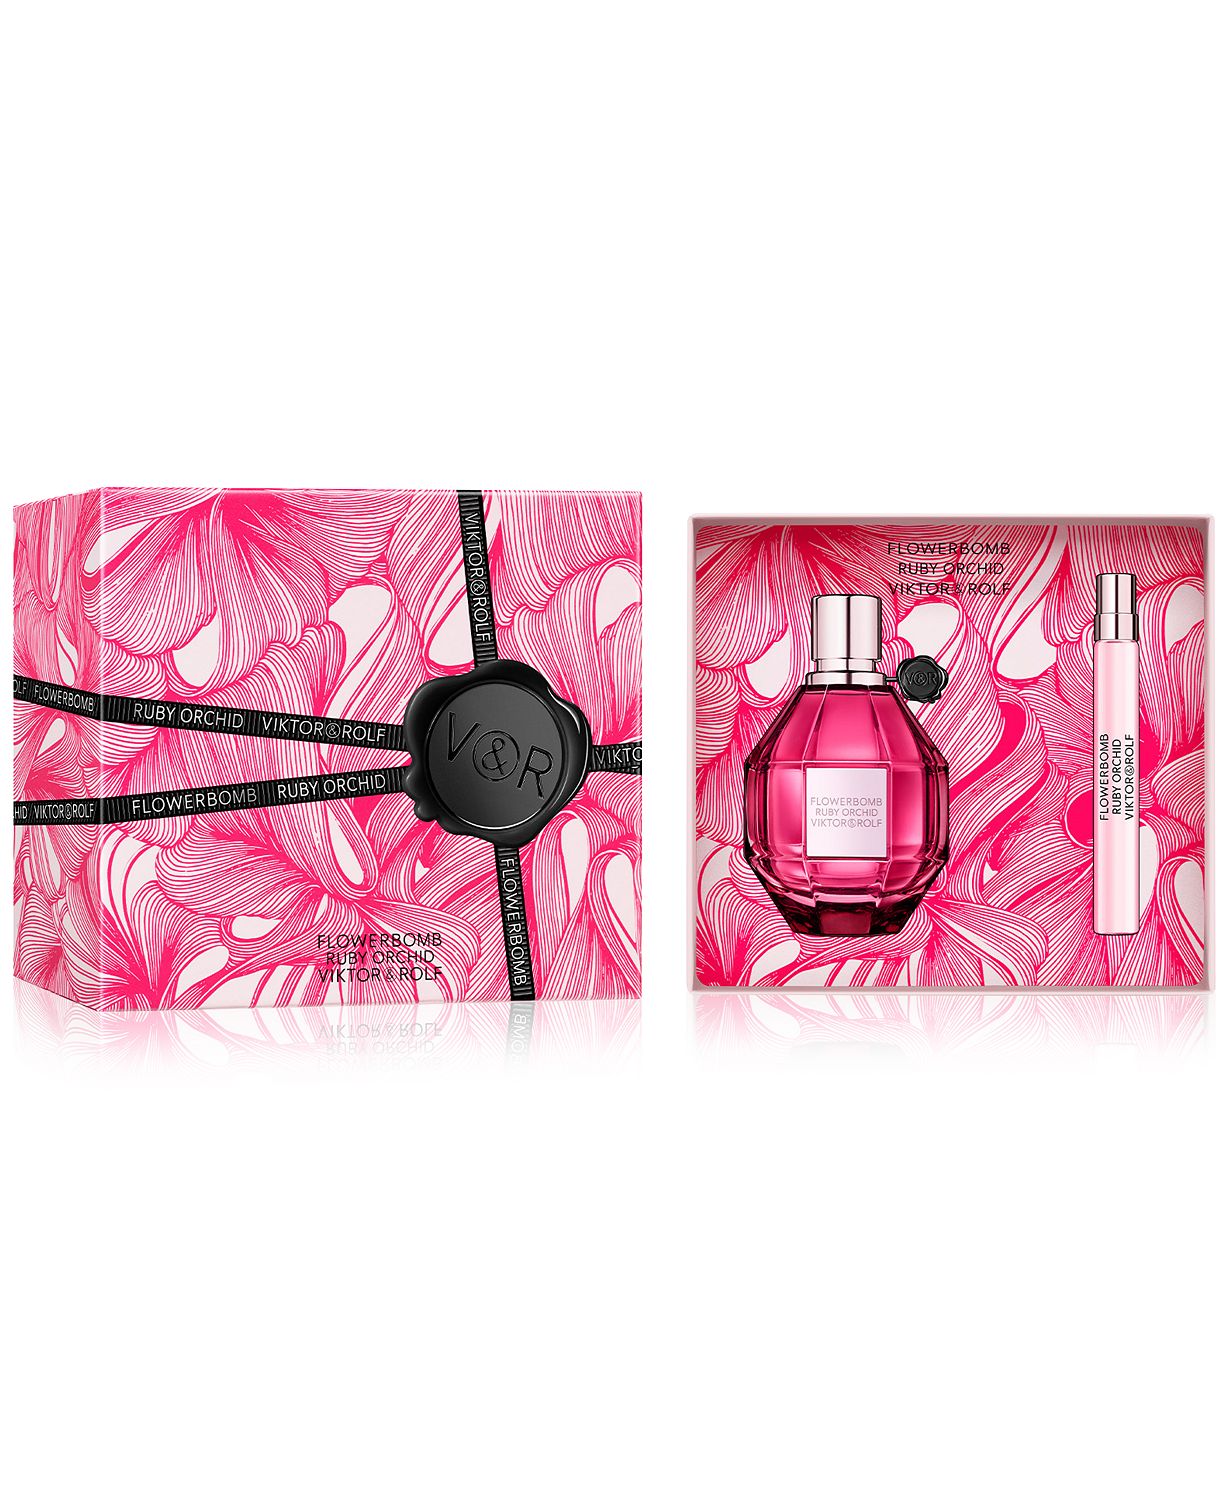 2-Pc. Flowerbomb Ruby Orchid Eau de Parfum Gift Set